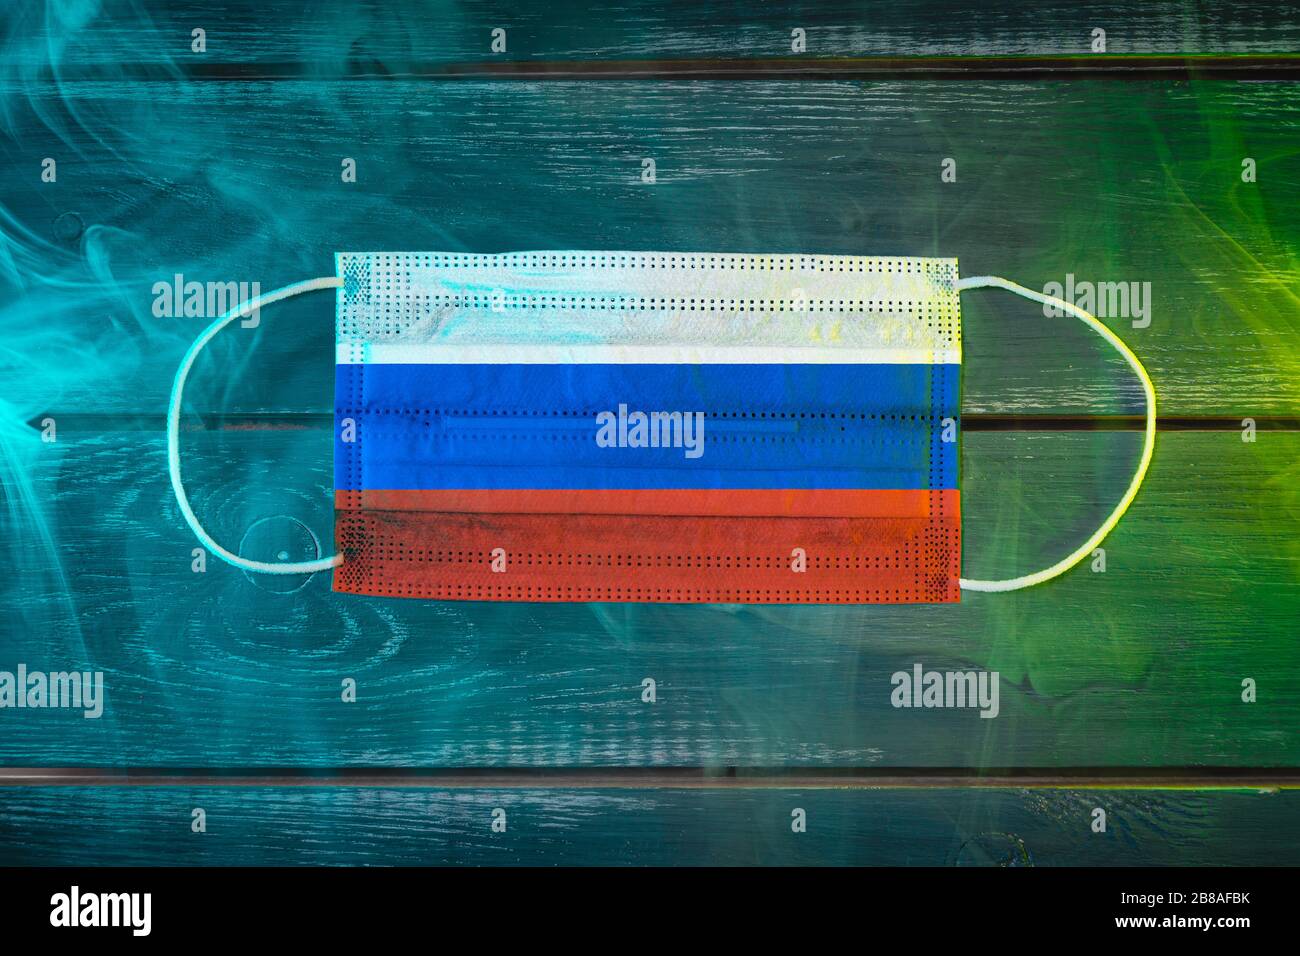 Medizinische Maske zum Schutz vor durch die Luft übertragbaren Krankheiten, in der russischen Nationalflaggen auf schwarzem Grund in blaugrünem Rauch gemalt. Medizinisches Prot Stockfoto